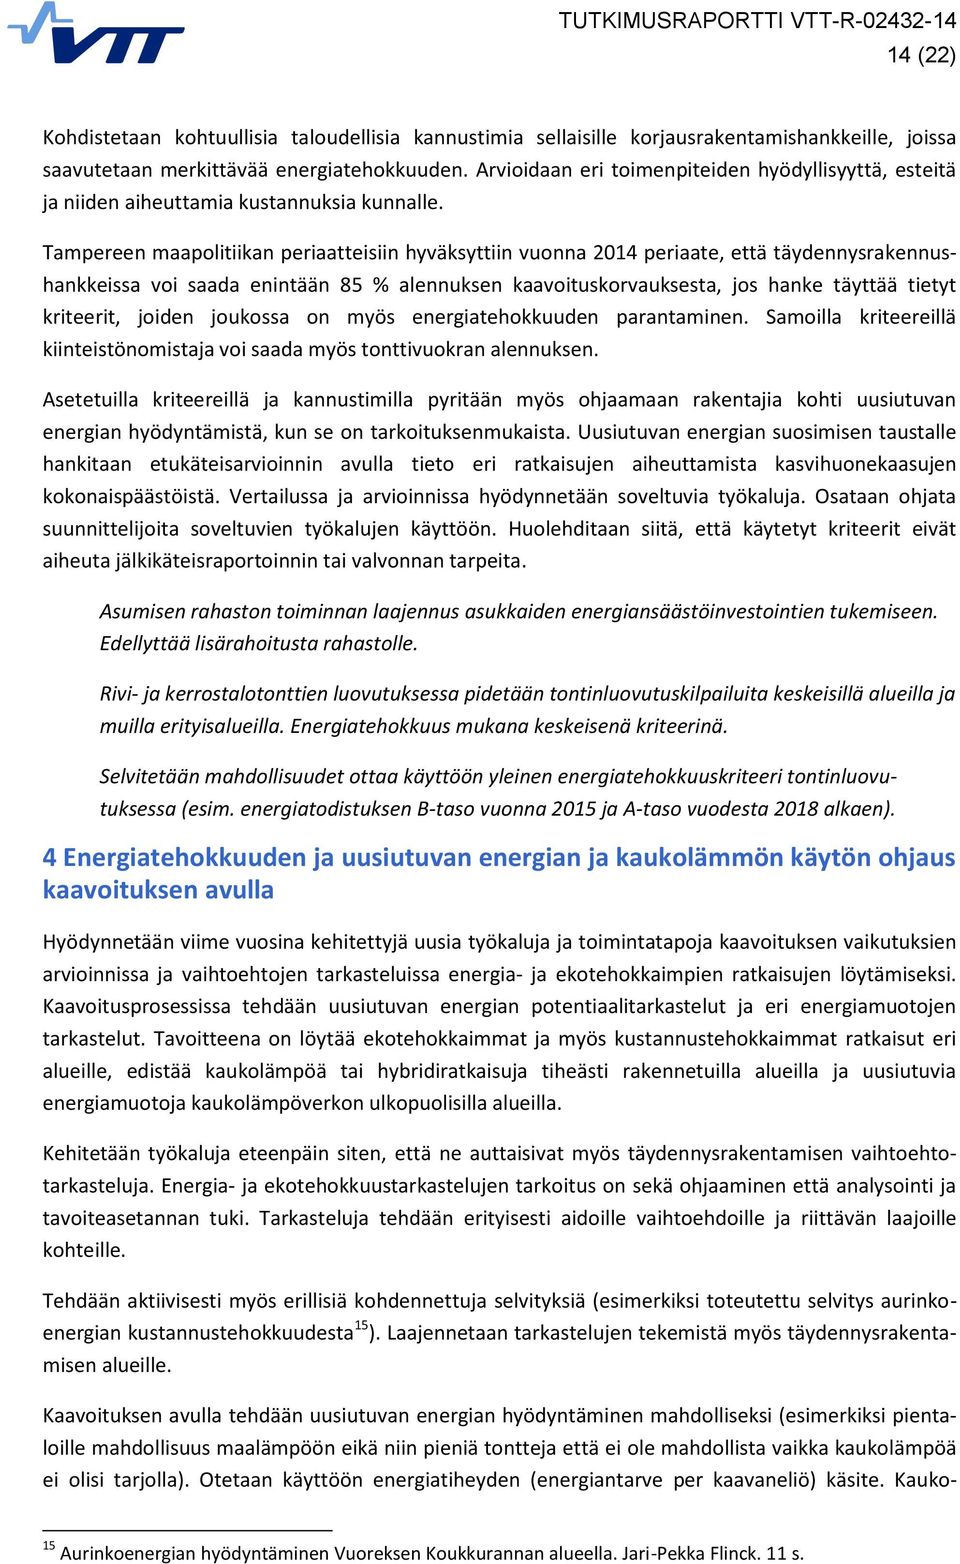 Tampereen maapolitiikan periaatteisiin hyväksyttiin vuonna 2014 periaate, että täydennysrakennushankkeissa voi saada enintään 85 % alennuksen kaavoituskorvauksesta, jos hanke täyttää tietyt